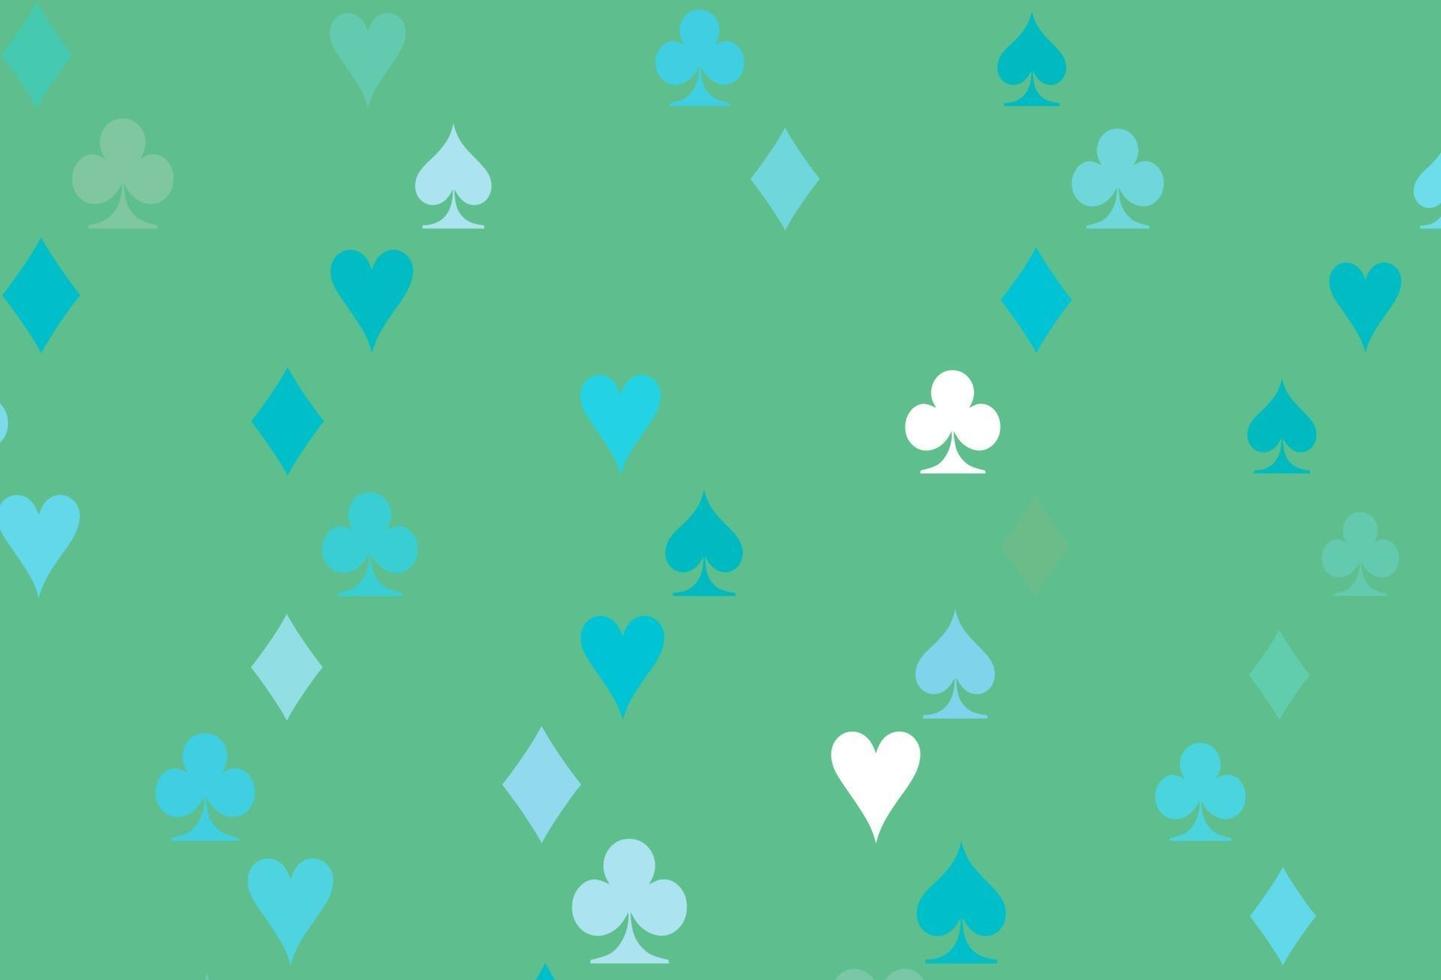 texture vecteur bleu clair et vert avec des cartes à jouer.